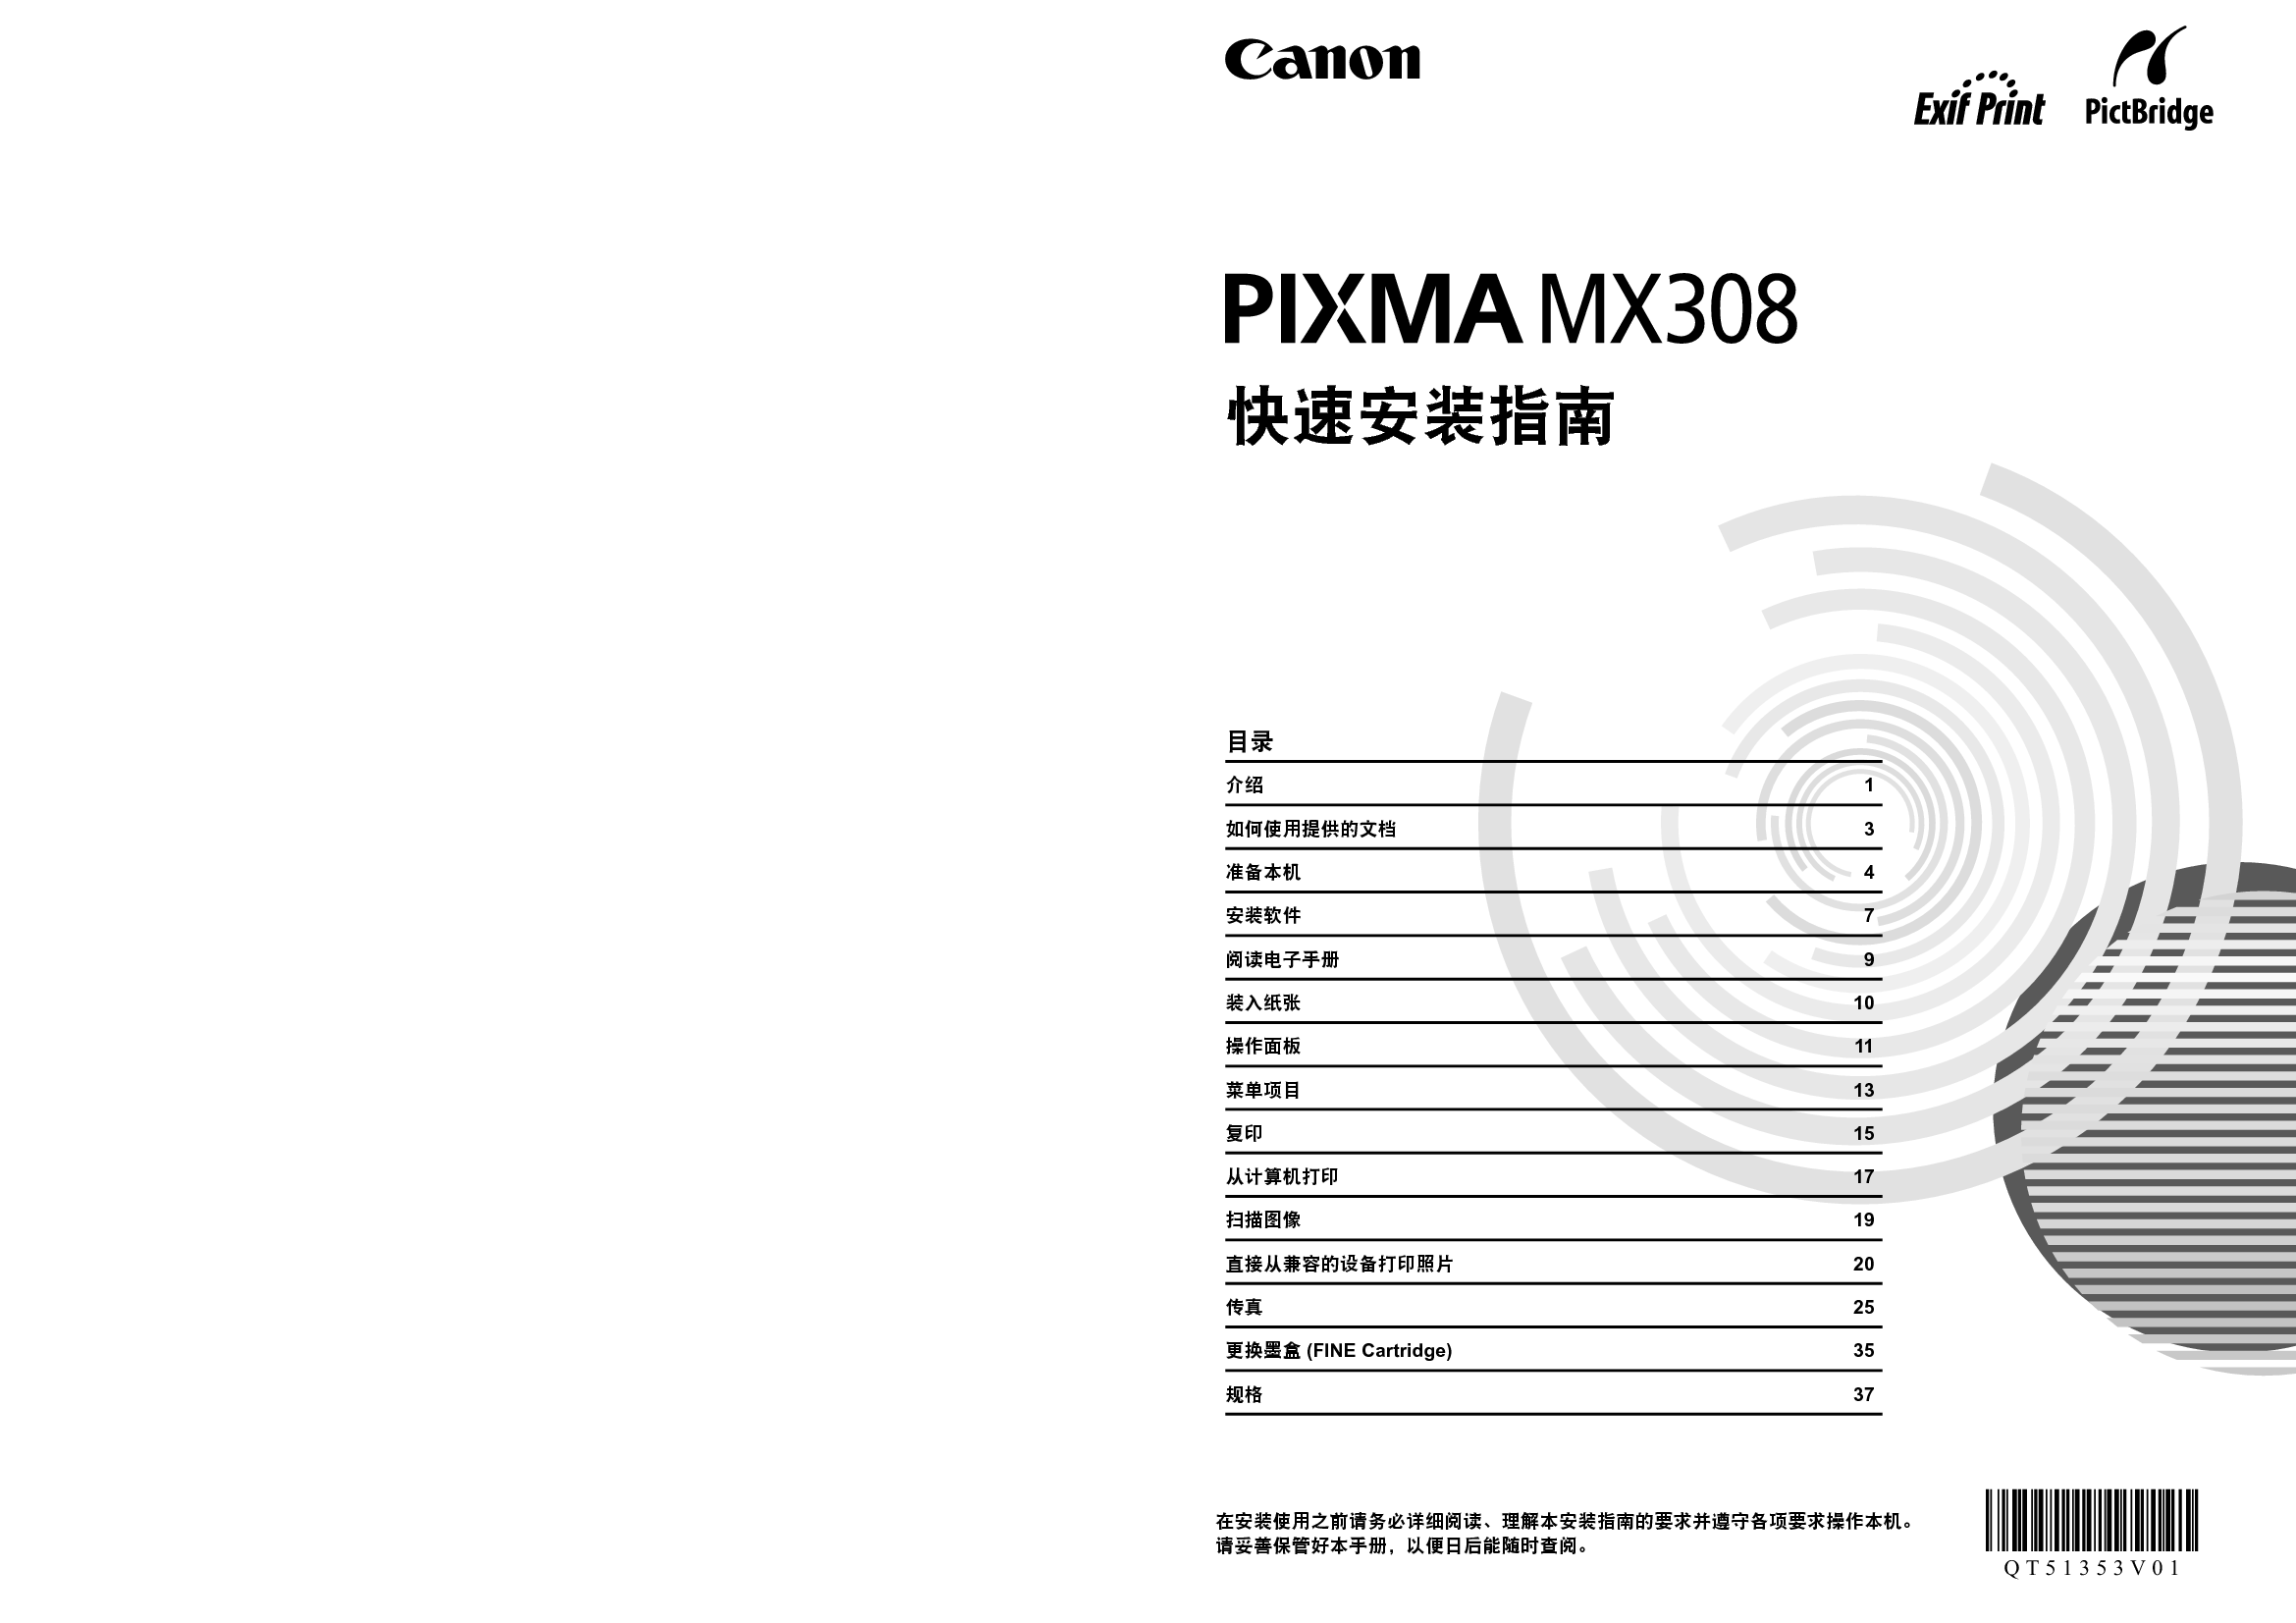 佳能 Canon PIXMA MX308 快速安装指南 封面